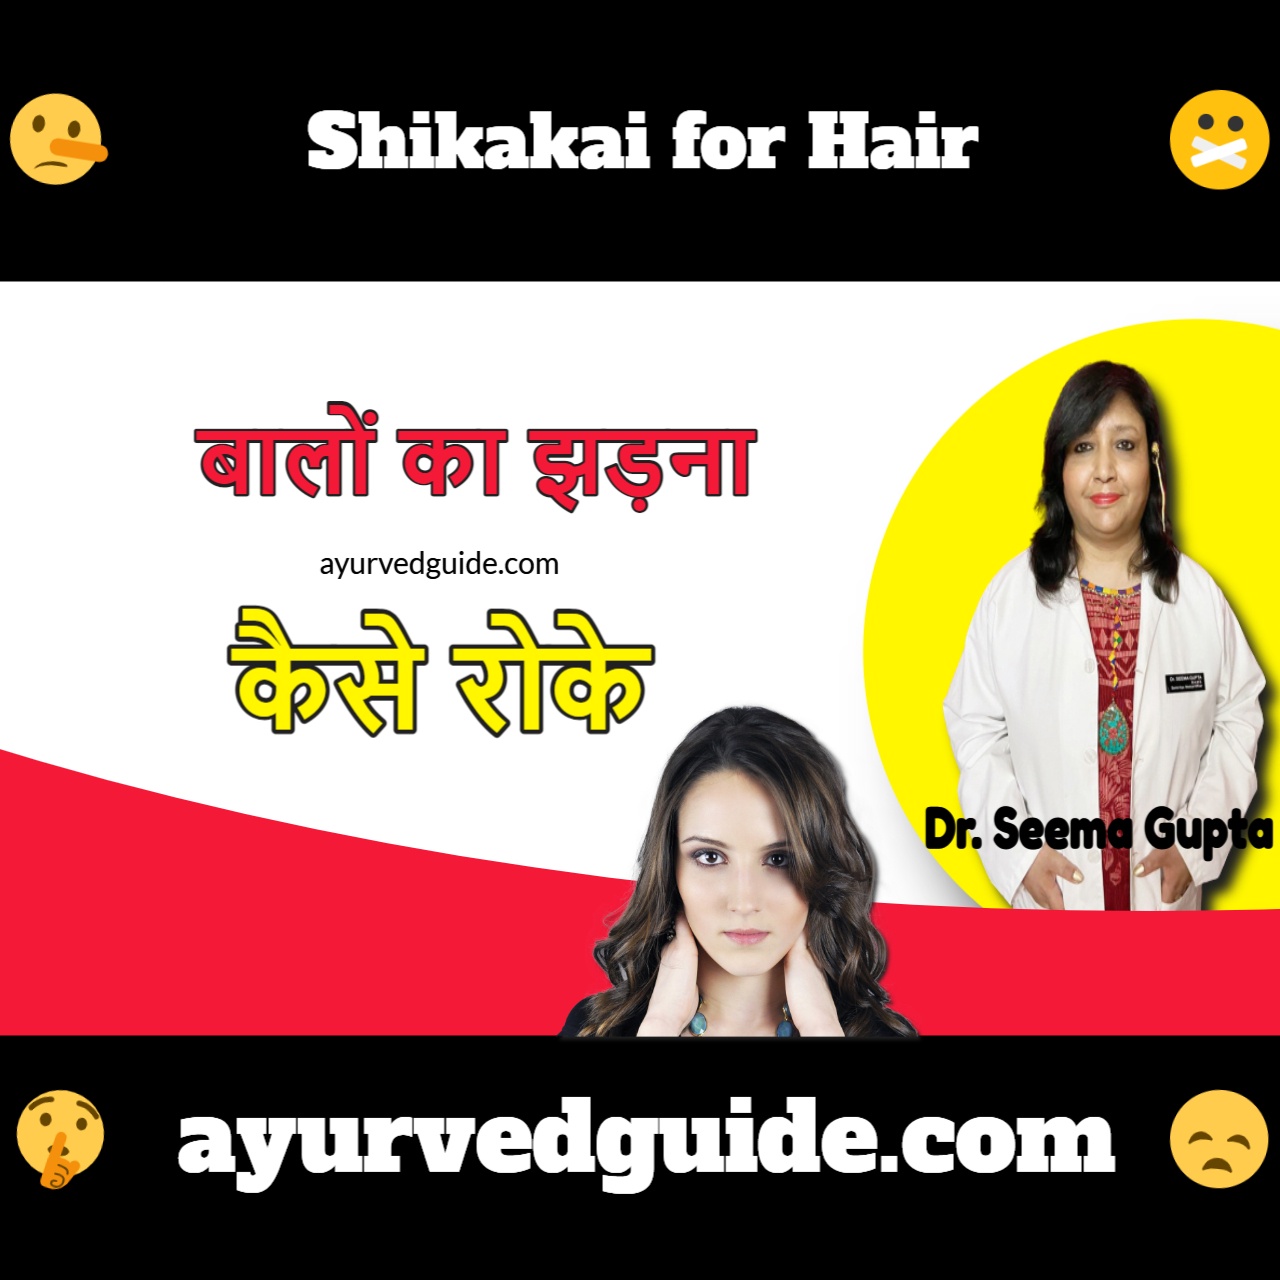 बालों का झड़ना कैसे रोके - Shikakai for Hair